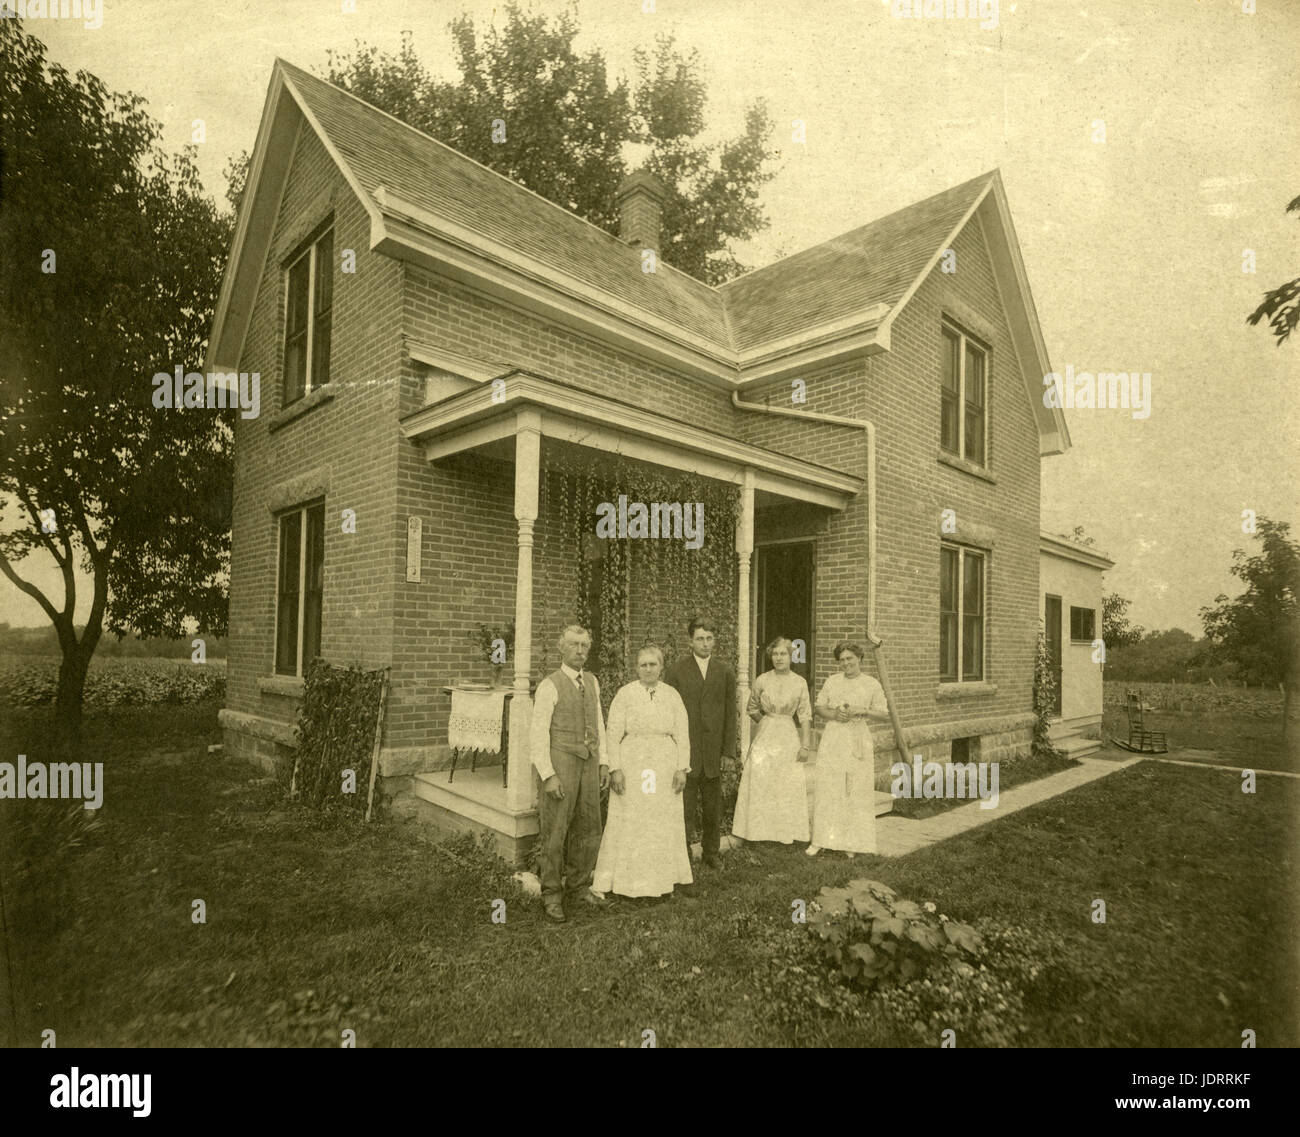 Antique c1910 fotografia, gruppo fotografia di famiglia al di fuori della loro casa. La posizione è probabilmente in o vicino a Mankato, Minnesota. Fonte: fotografia originale. Foto Stock